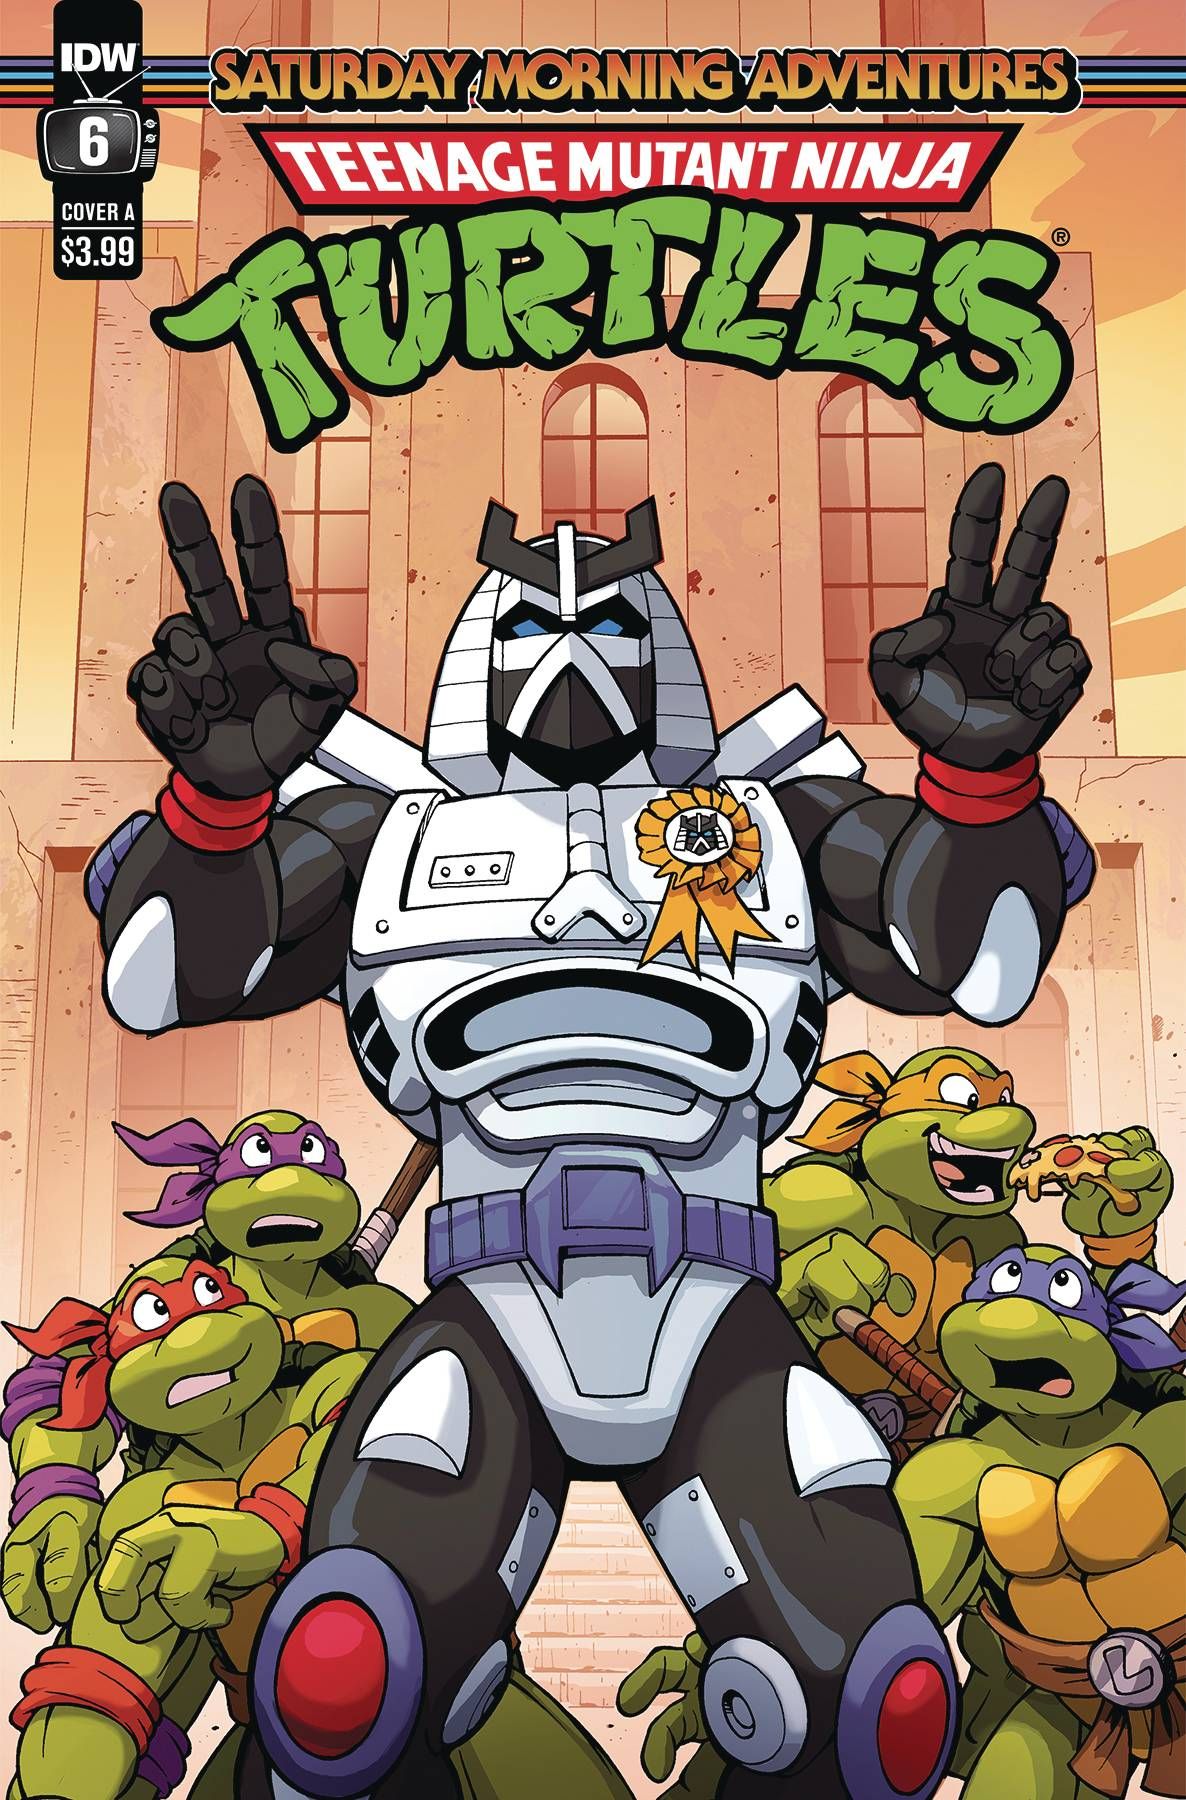 Teenage Mutant Ninja Turtles: Saturday Morning Adventures #6 Comic